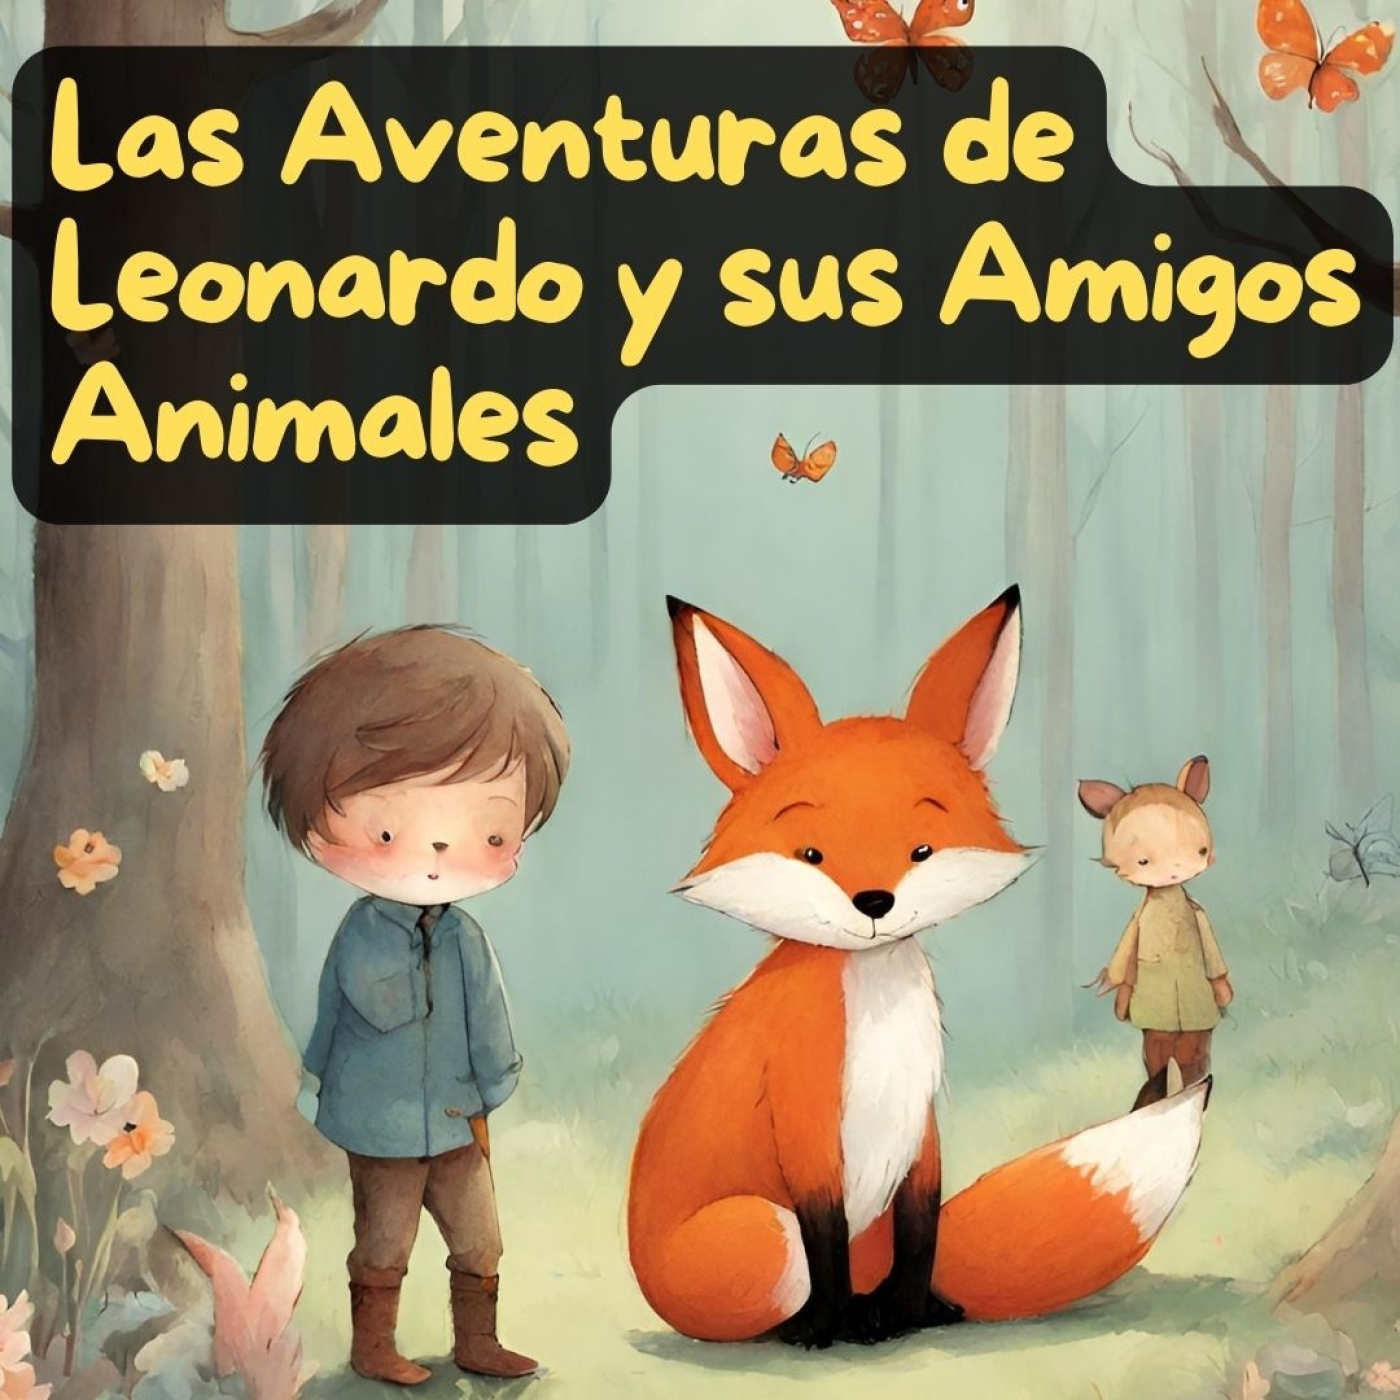 Las Aventuras de Leonardo y sus Amigos Animales